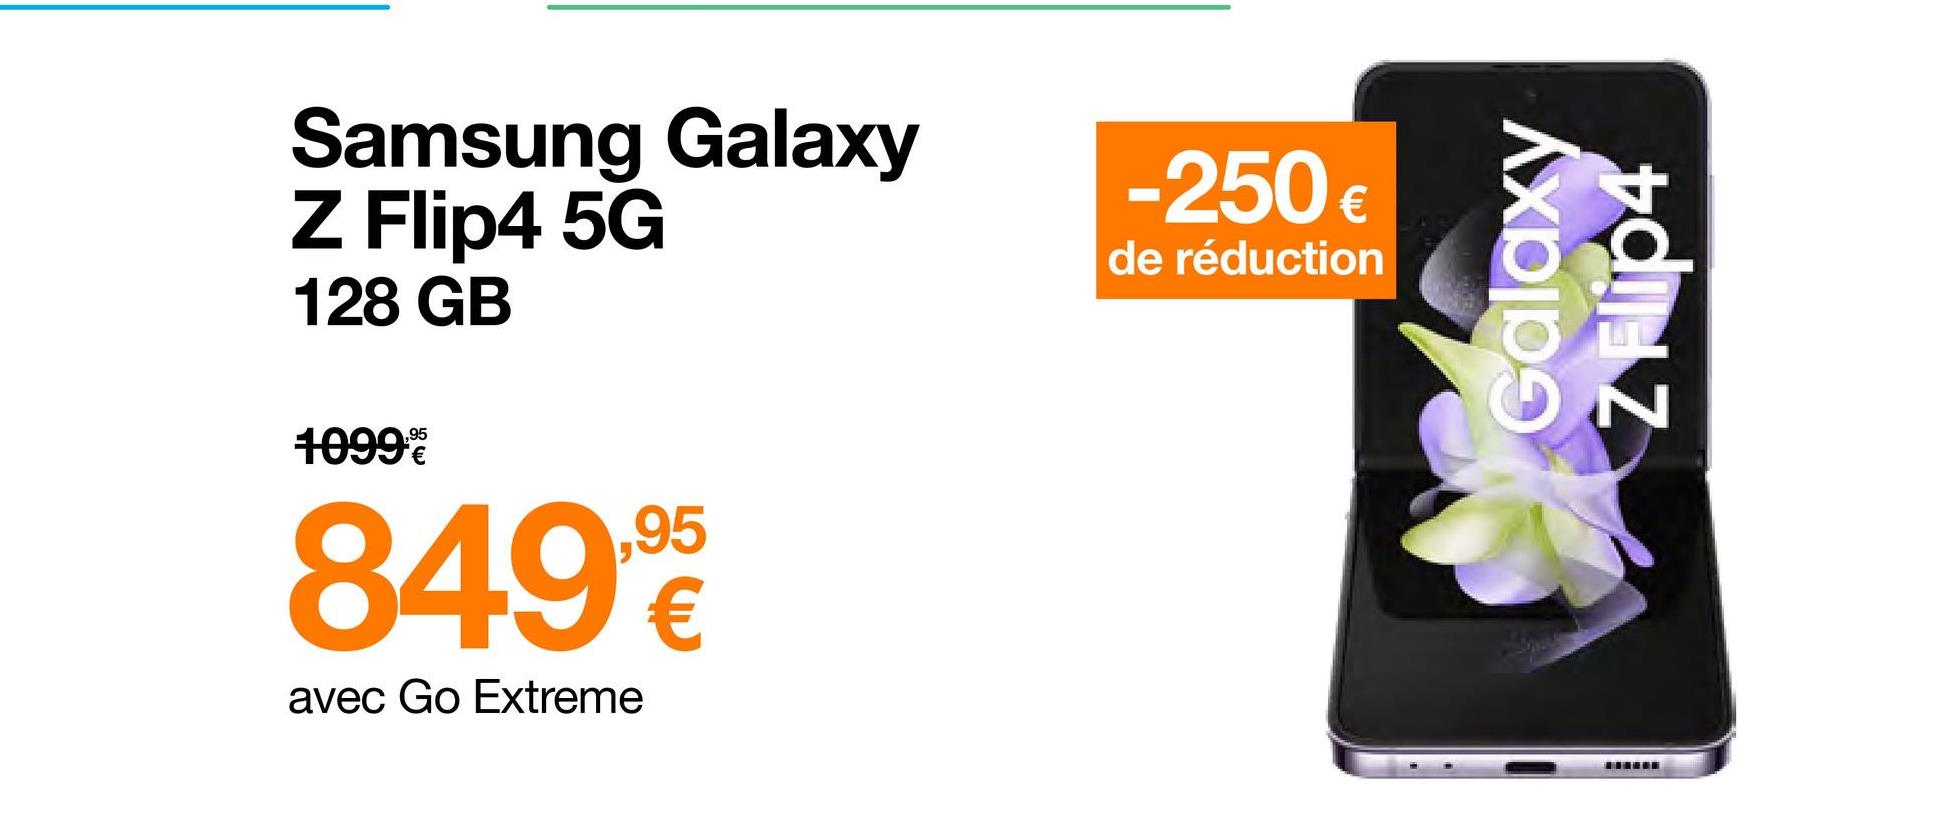 Samsung Galaxy
Z Flip4 5G
128 GB
1099%
849,90
avec Go Extreme
-250€
de réduction
Galaxy
N
*****